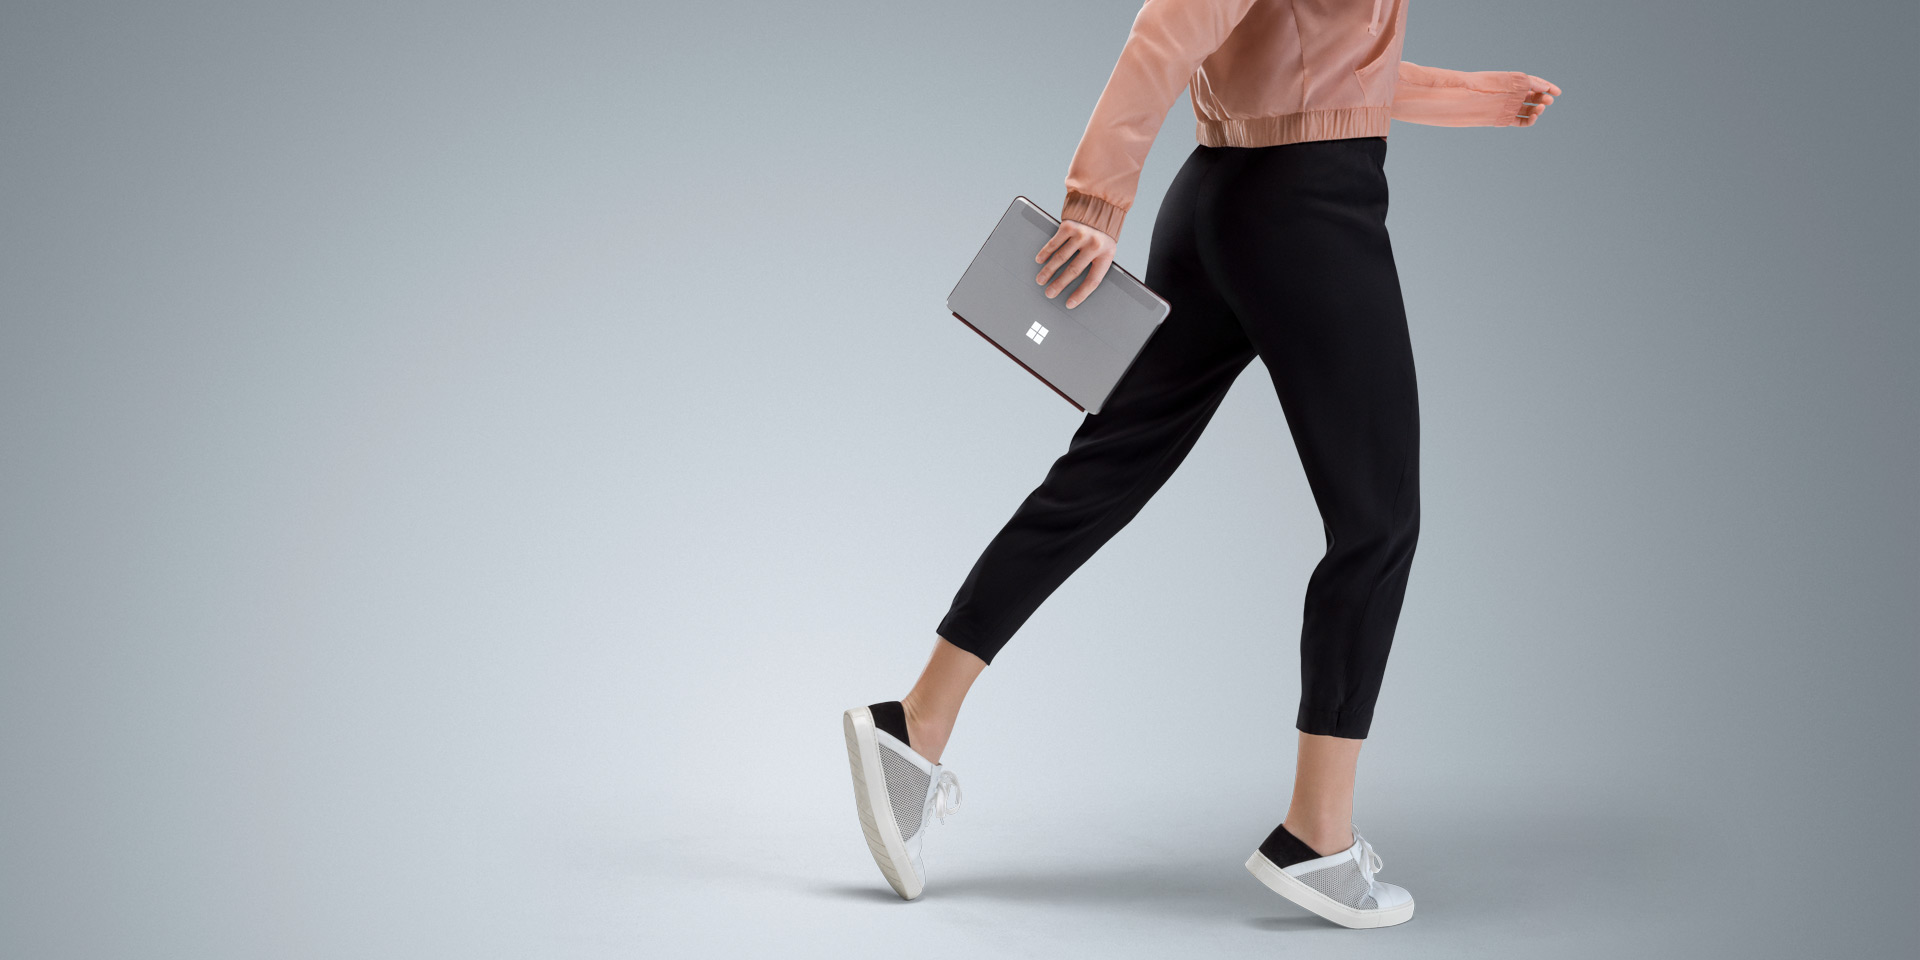 جهاز Surface Go في يد امرأة أثناء مشيها